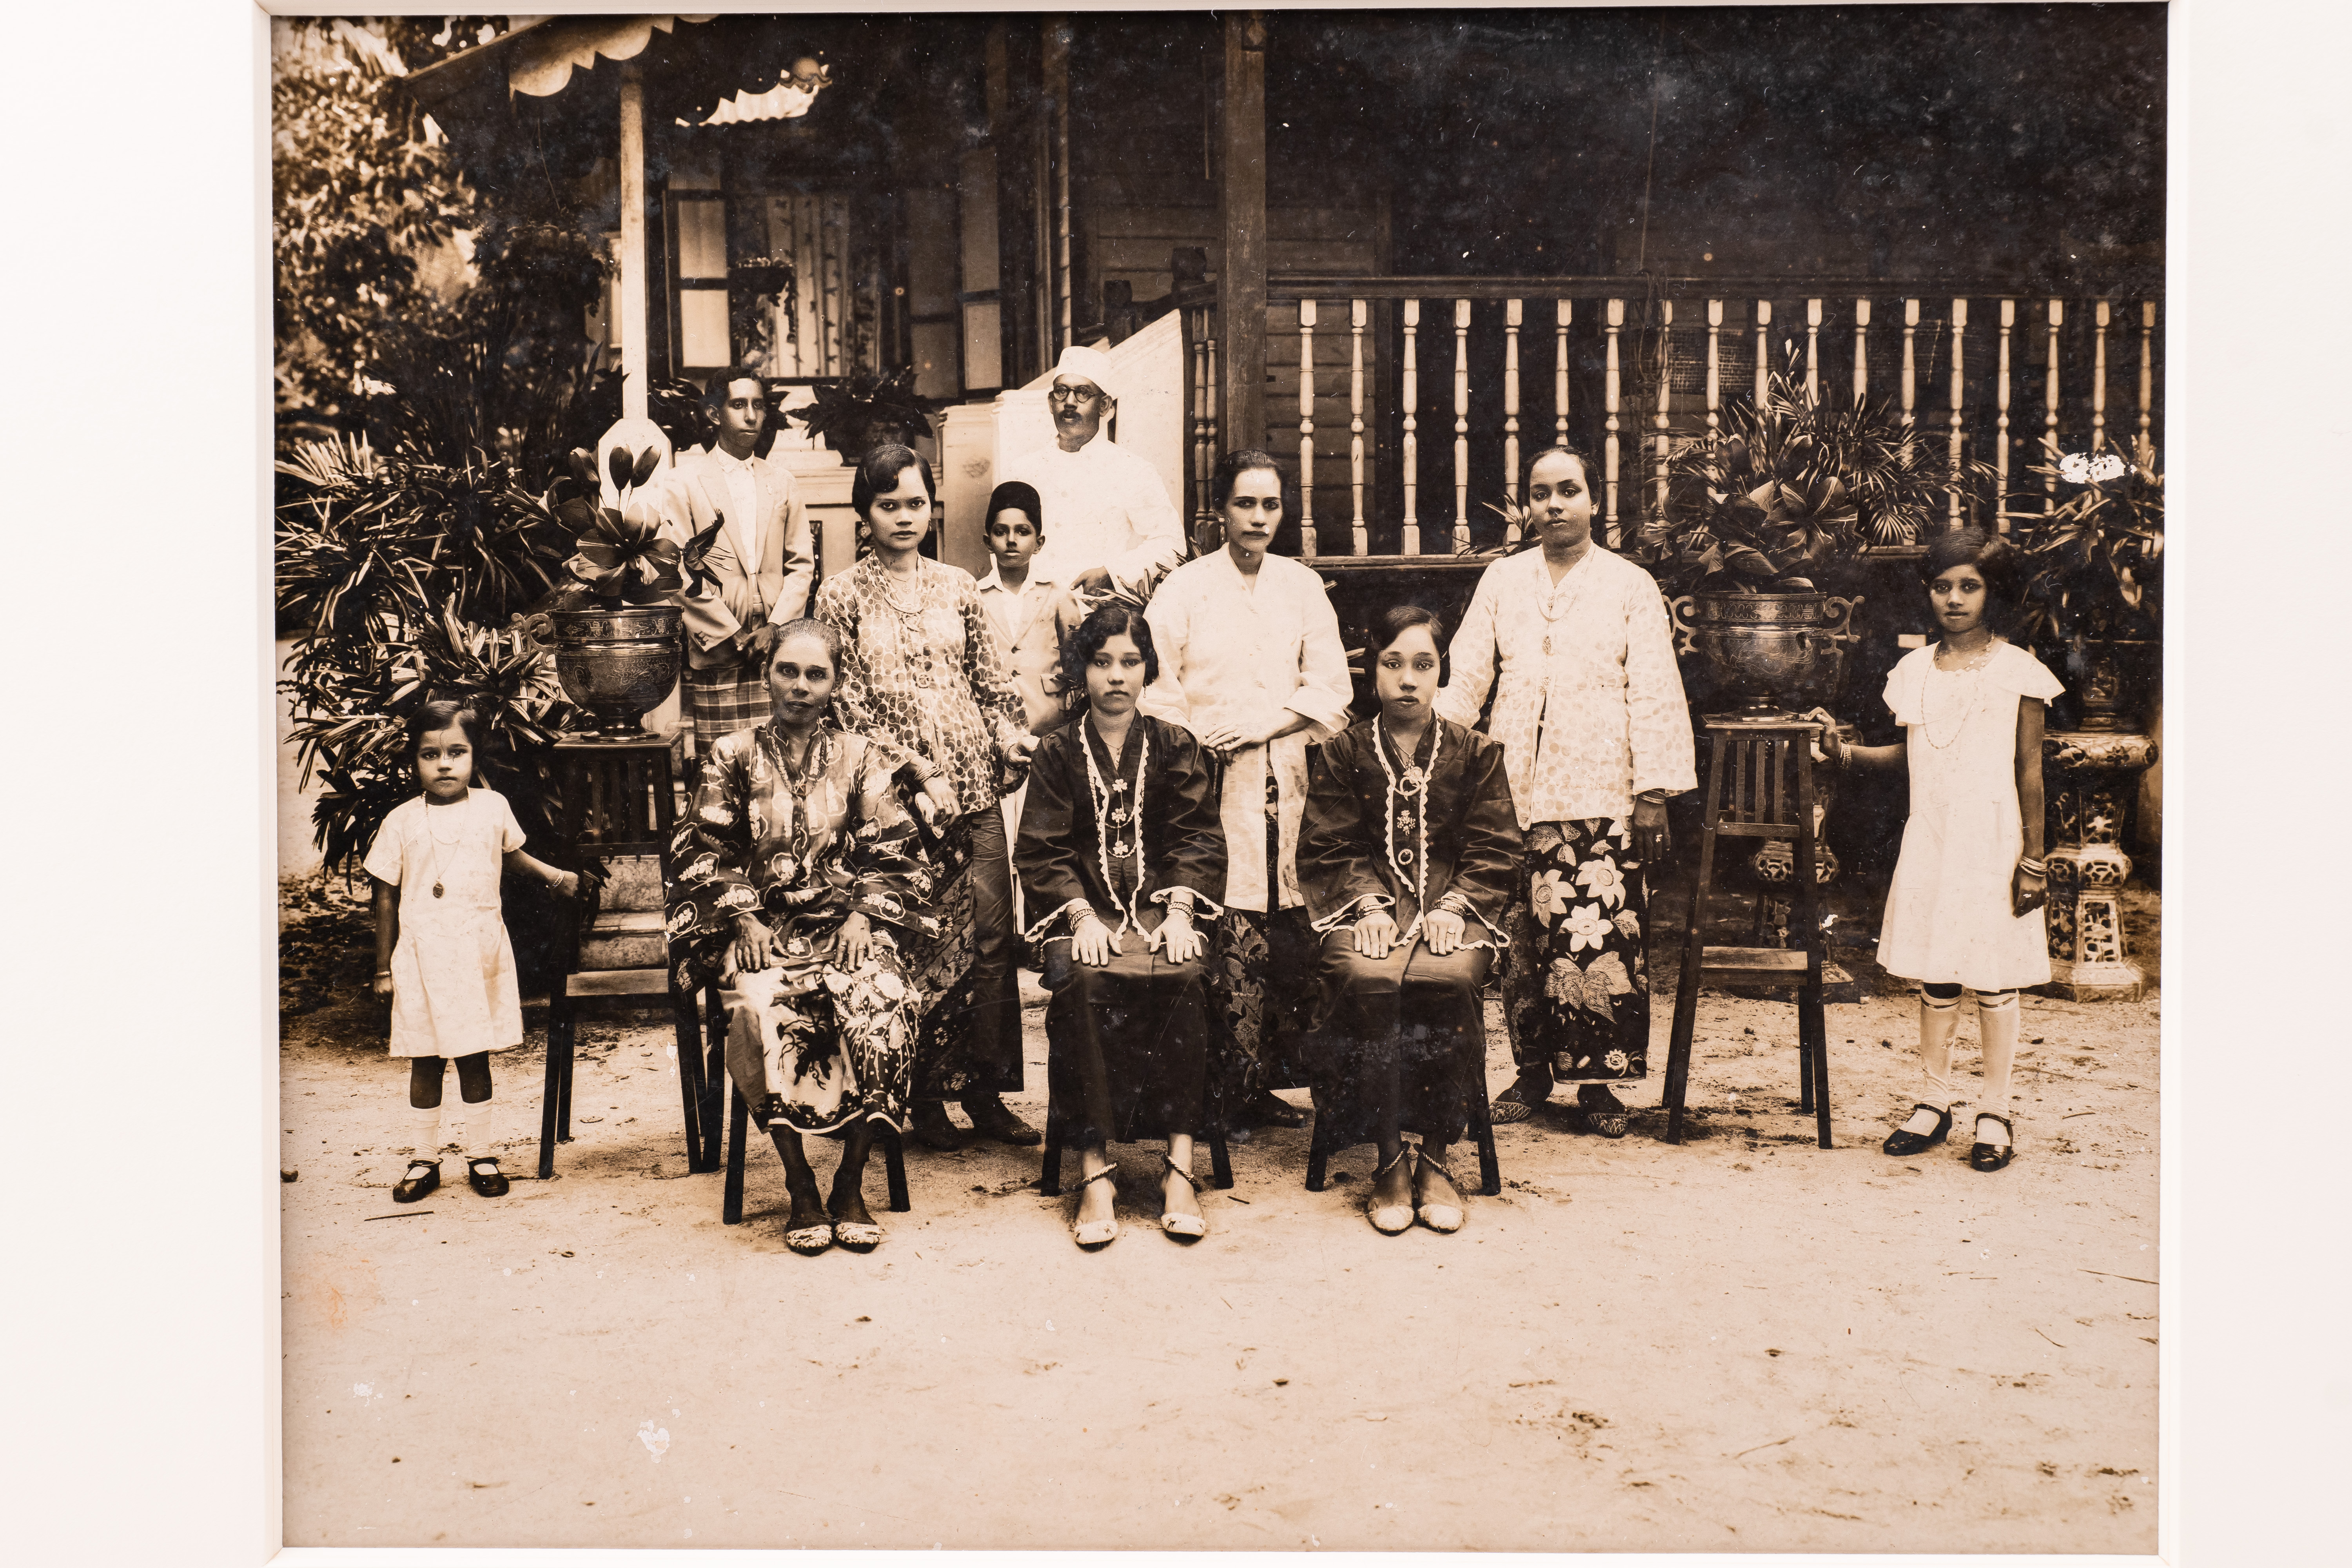 Jawi Peranakan family at their home in Telok Kurau Image courtesy of the Peranakan Museum